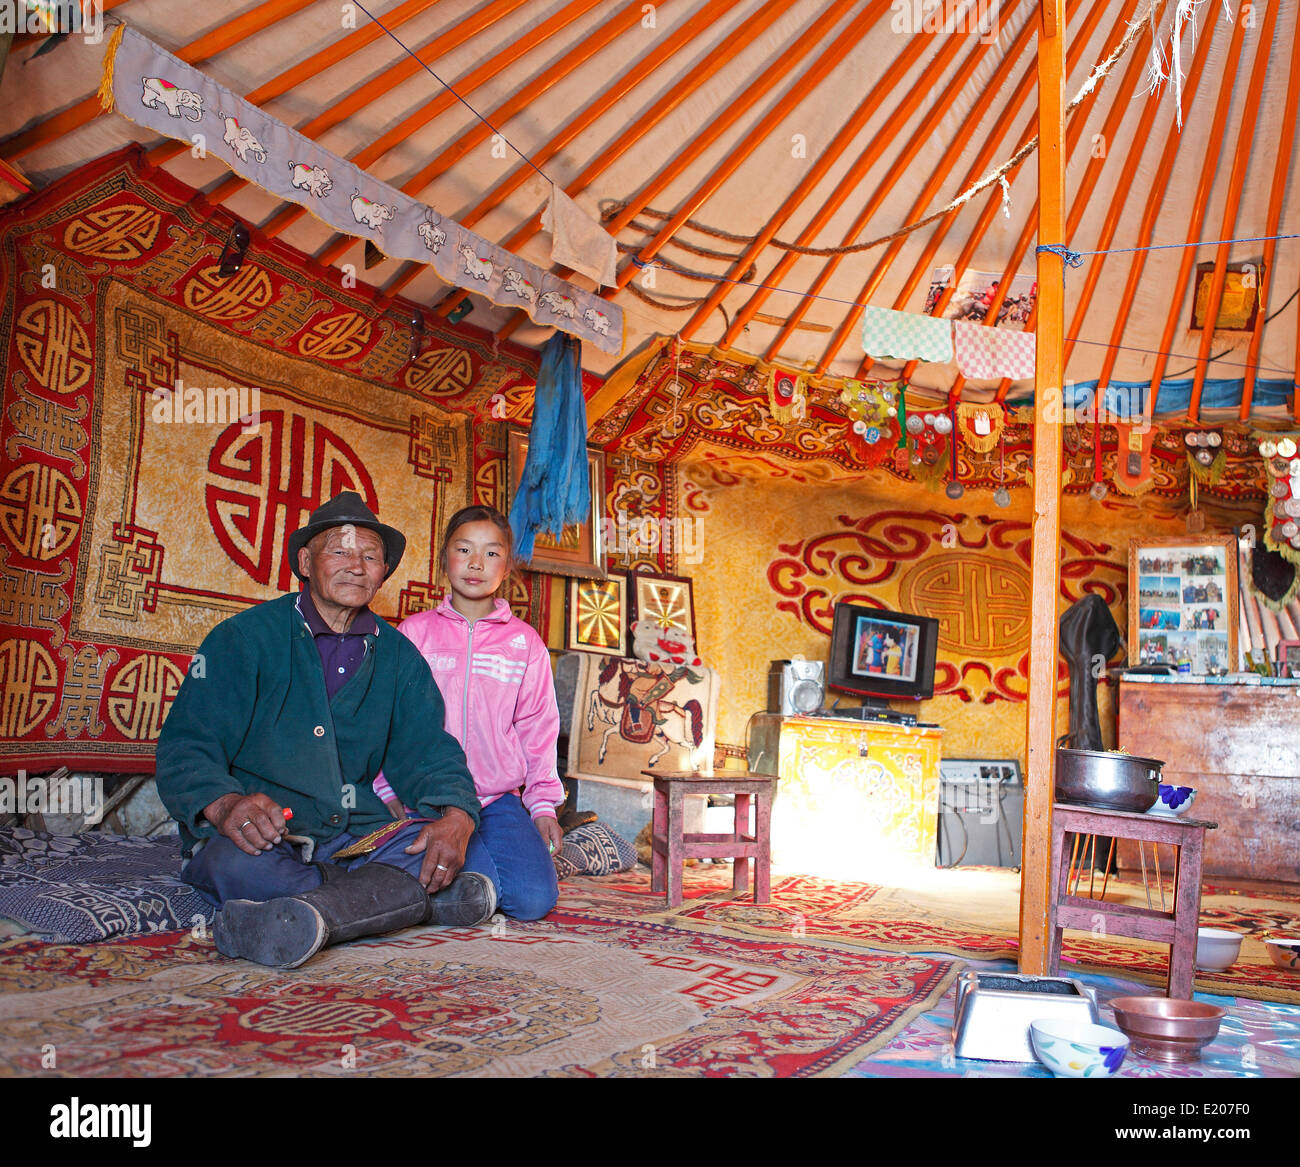 L'homme de Mongolie, 85 ans, avec sa petite-fille, 9 ans, dans une yourte traditionnelle, désert de Gobi, Mongolie, Province Ömnögovi Banque D'Images